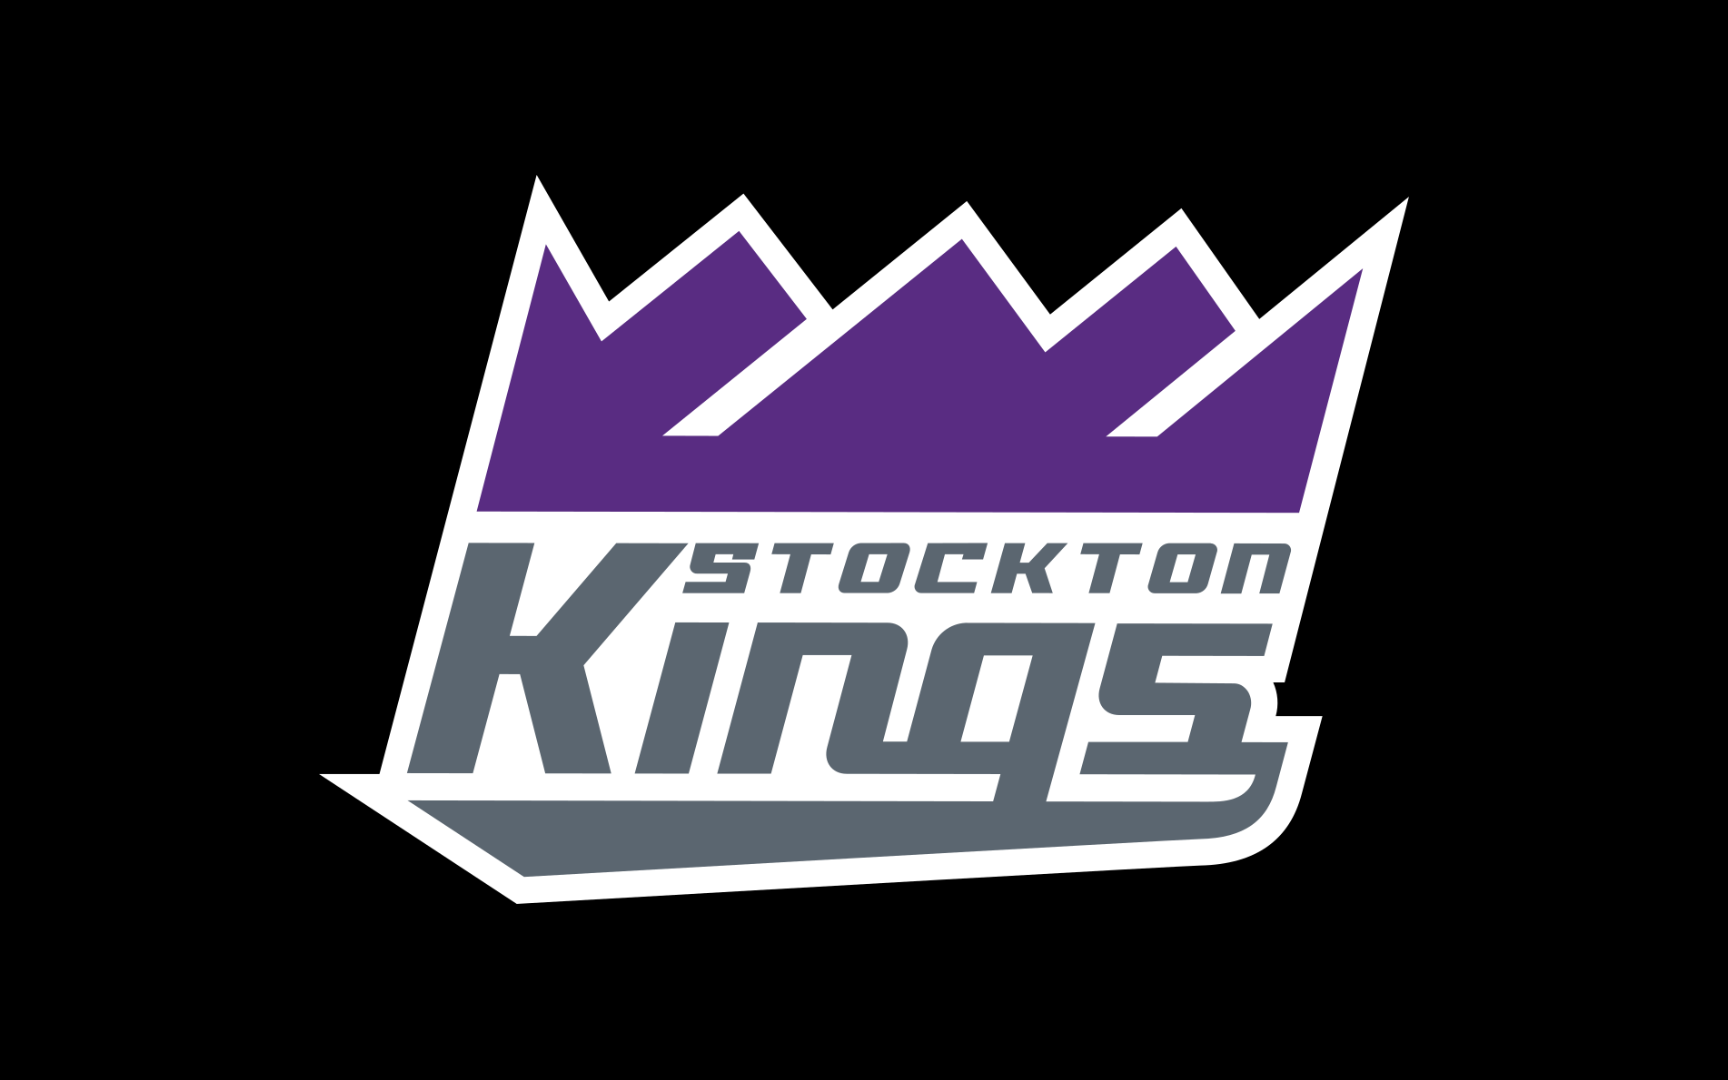 Stockton Kings vs Santa Cruz Warriors